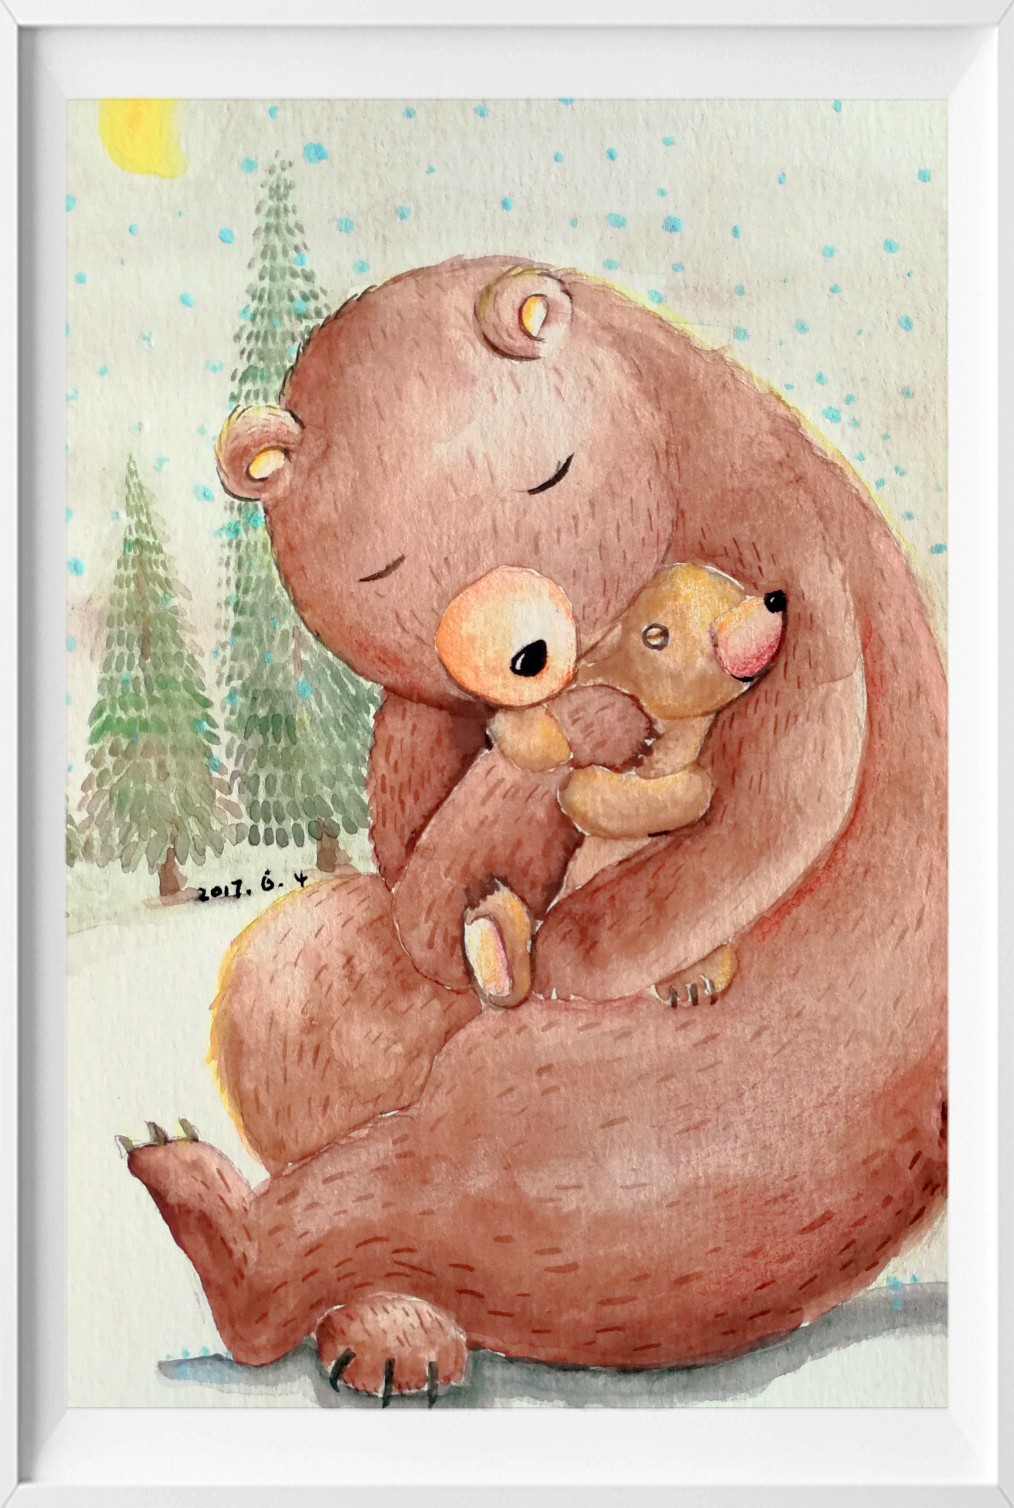 水彩熊抱抱 拥抱熊 熊宝宝 可爱的熊 熊妈妈和熊宝宝 熊手绘 绘画